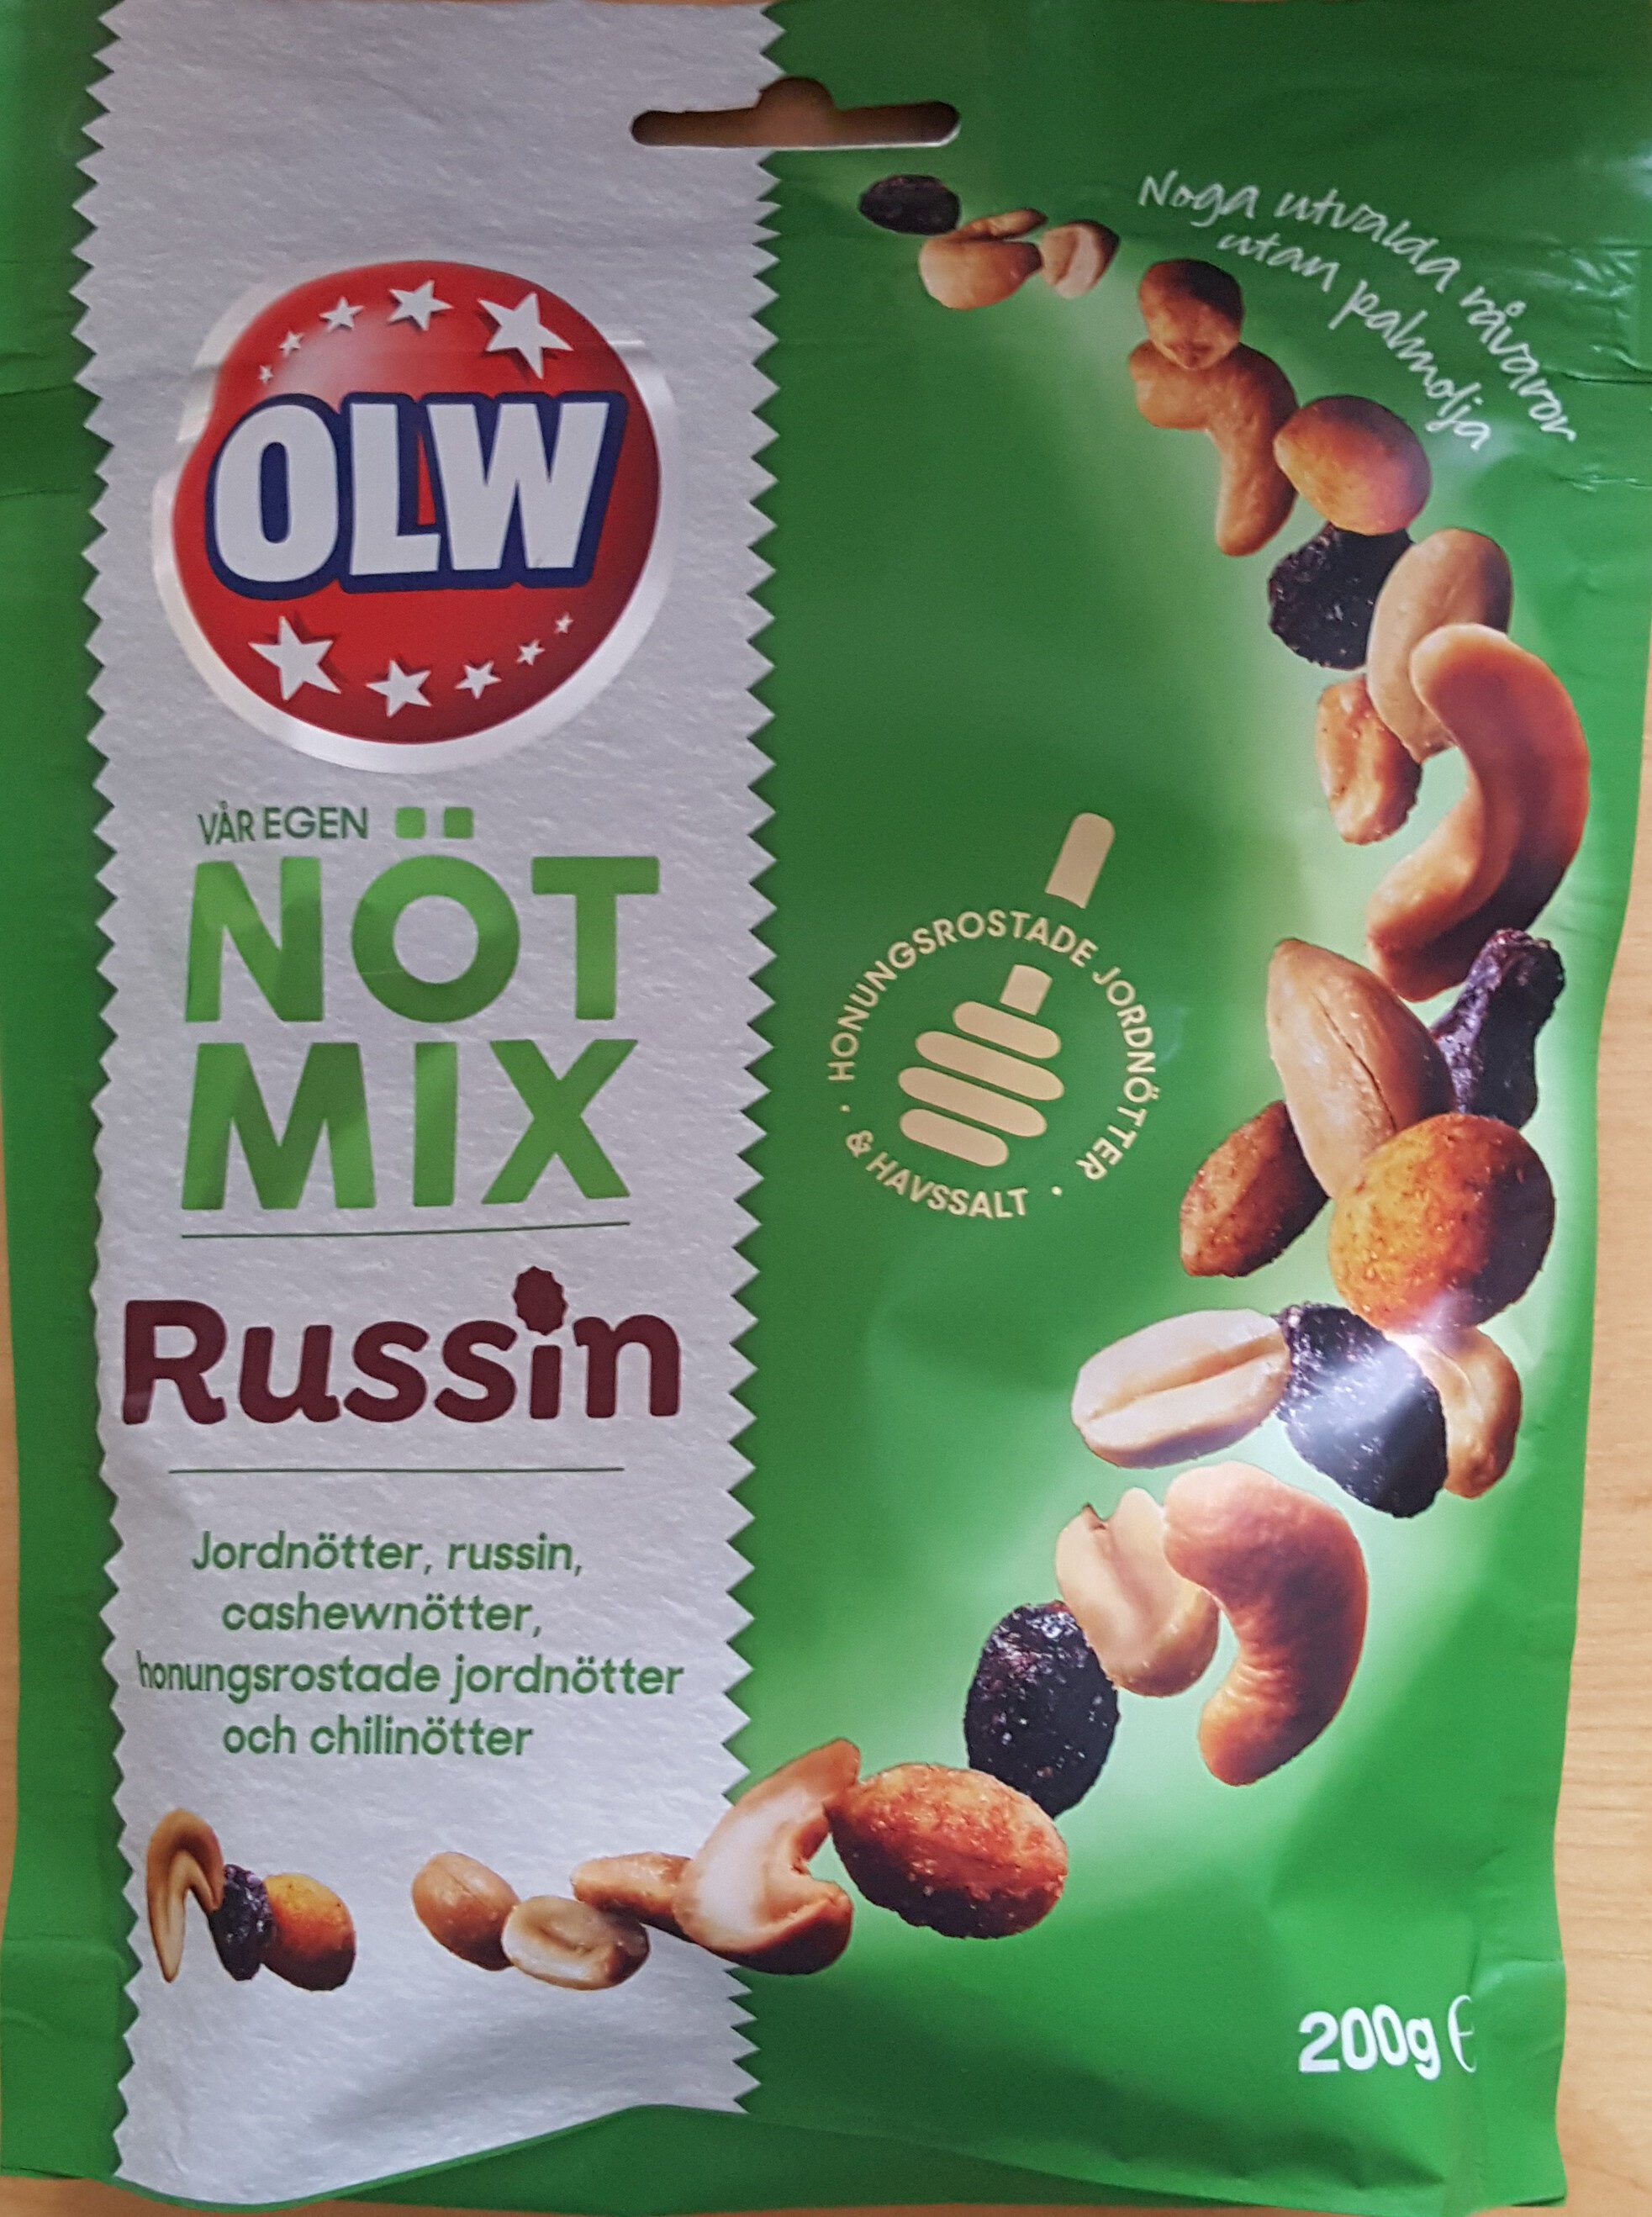 Nöt Mix - Russin - Produkt